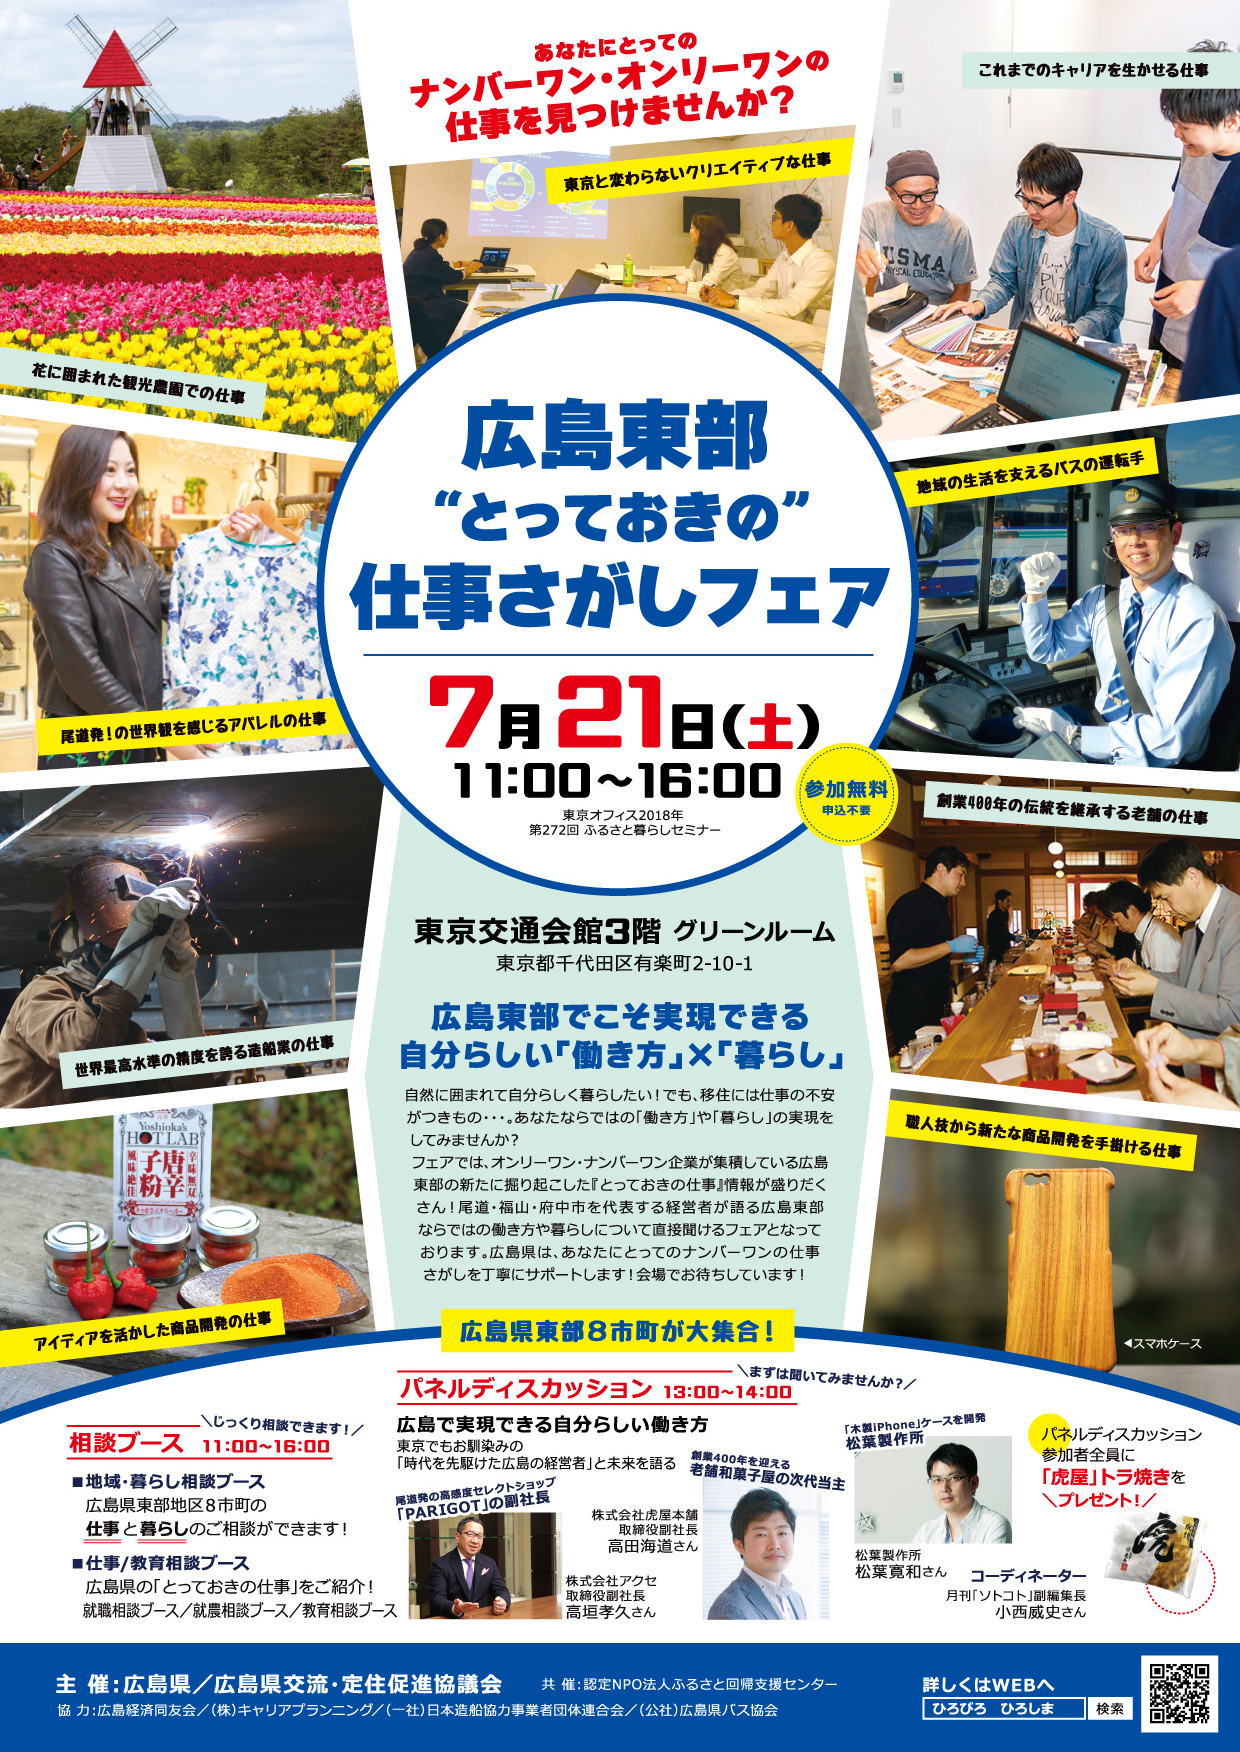 広島東部「とっておきの」仕事さがしフェア | 移住関連イベント情報